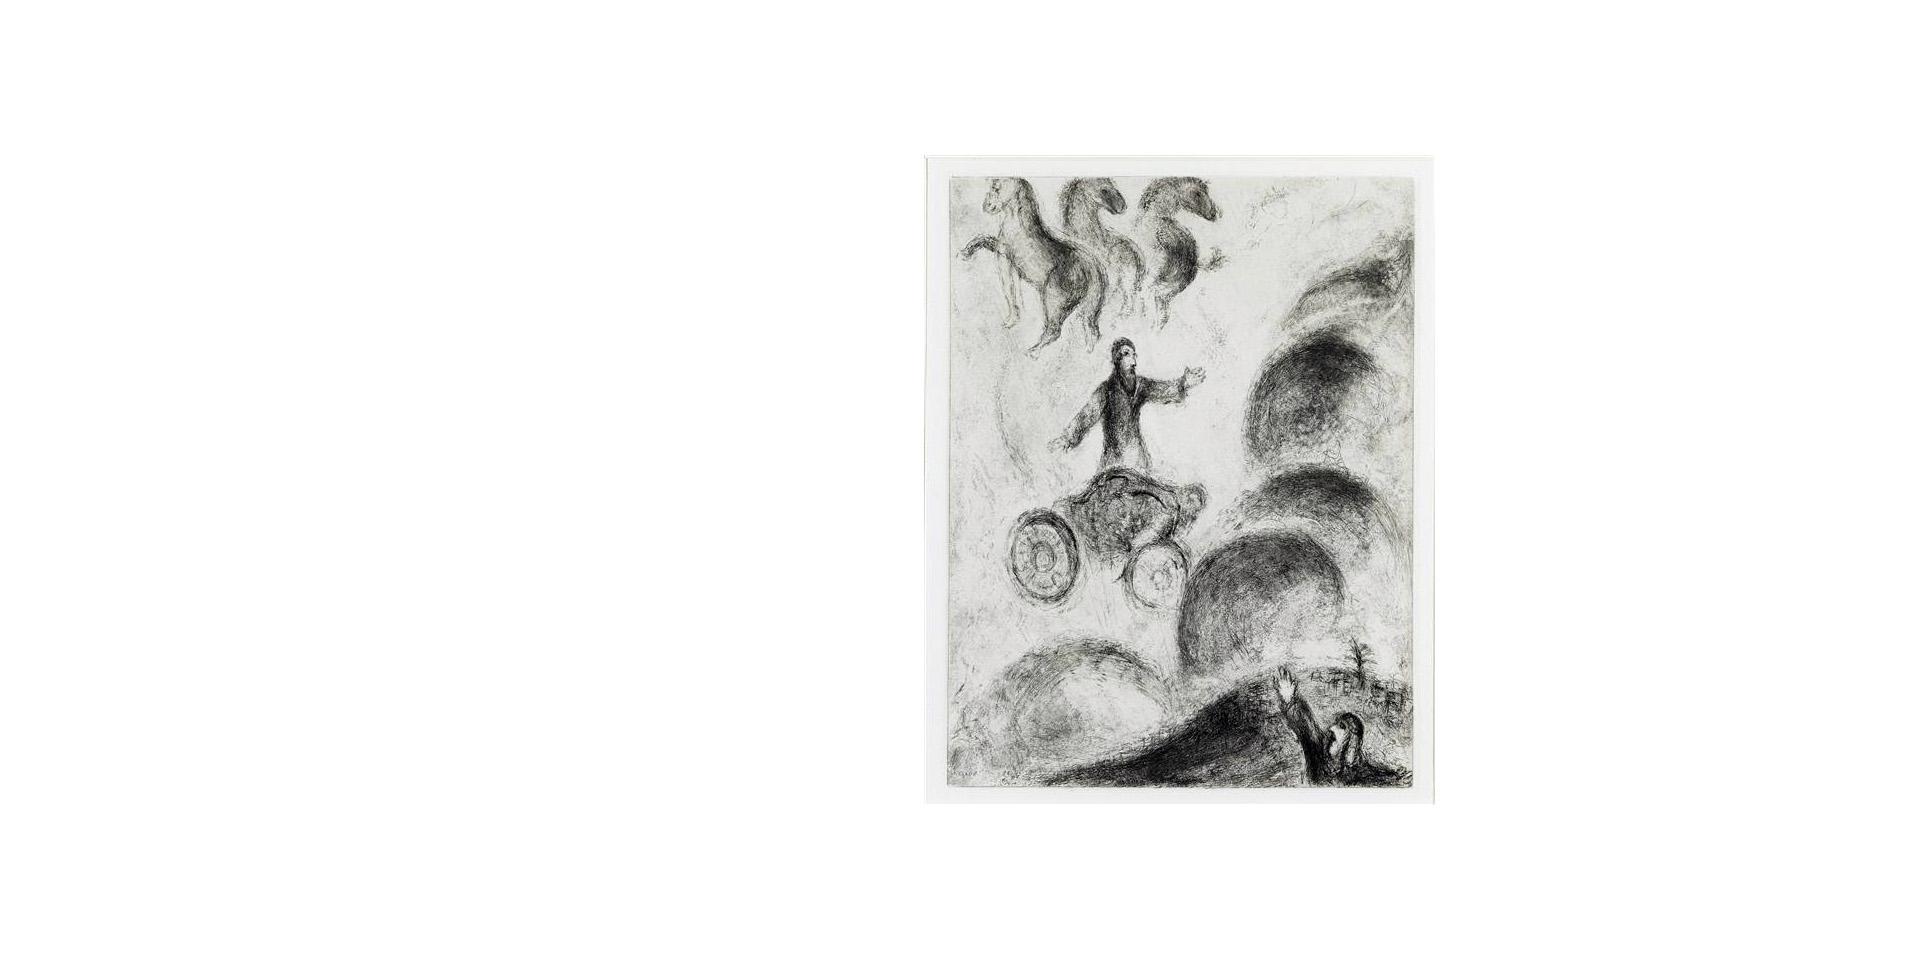 Marc Chagall, "Elie enlevé au ciel sur un char de feu", 1952-1956; Estampe, 32,9 x 25,9 cm. Nice, musée national Marc Chagall, donation Marc et Valentina Chagall (1972). © Photo : Rmn-GP / Adrien Didierjean © ADAGP, Paris, 2022